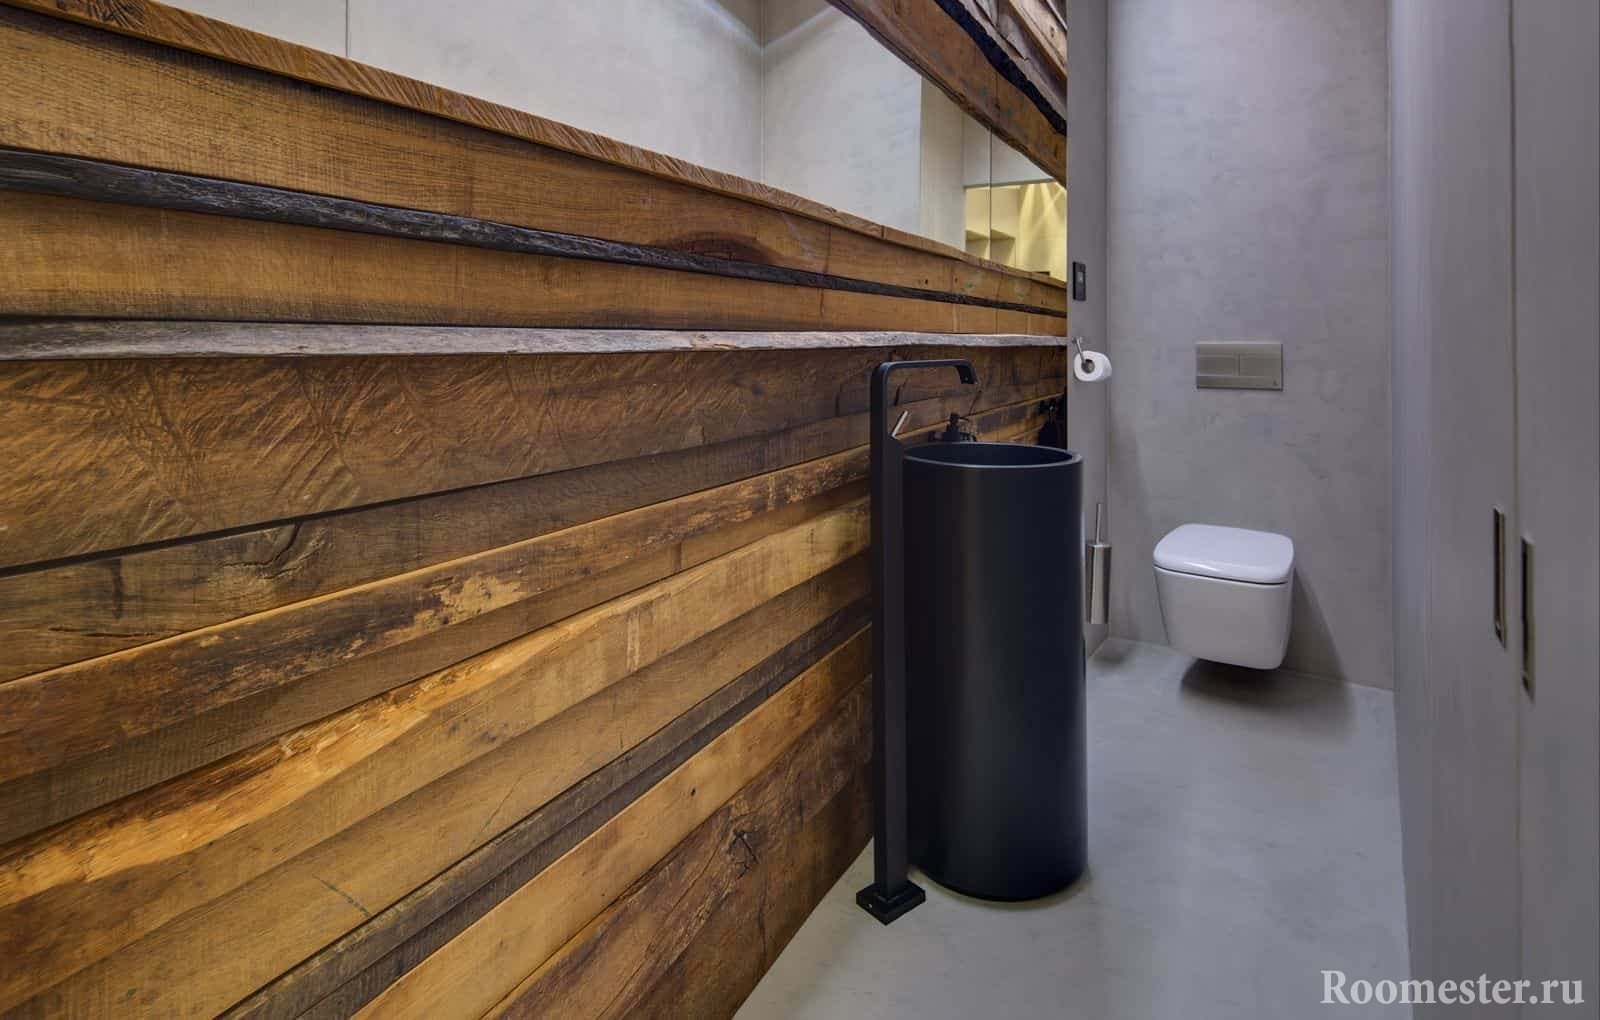 Modernes Design einer kleinen Toilette im Öko-Stil mit einem ungewöhnlichen Waschbecken